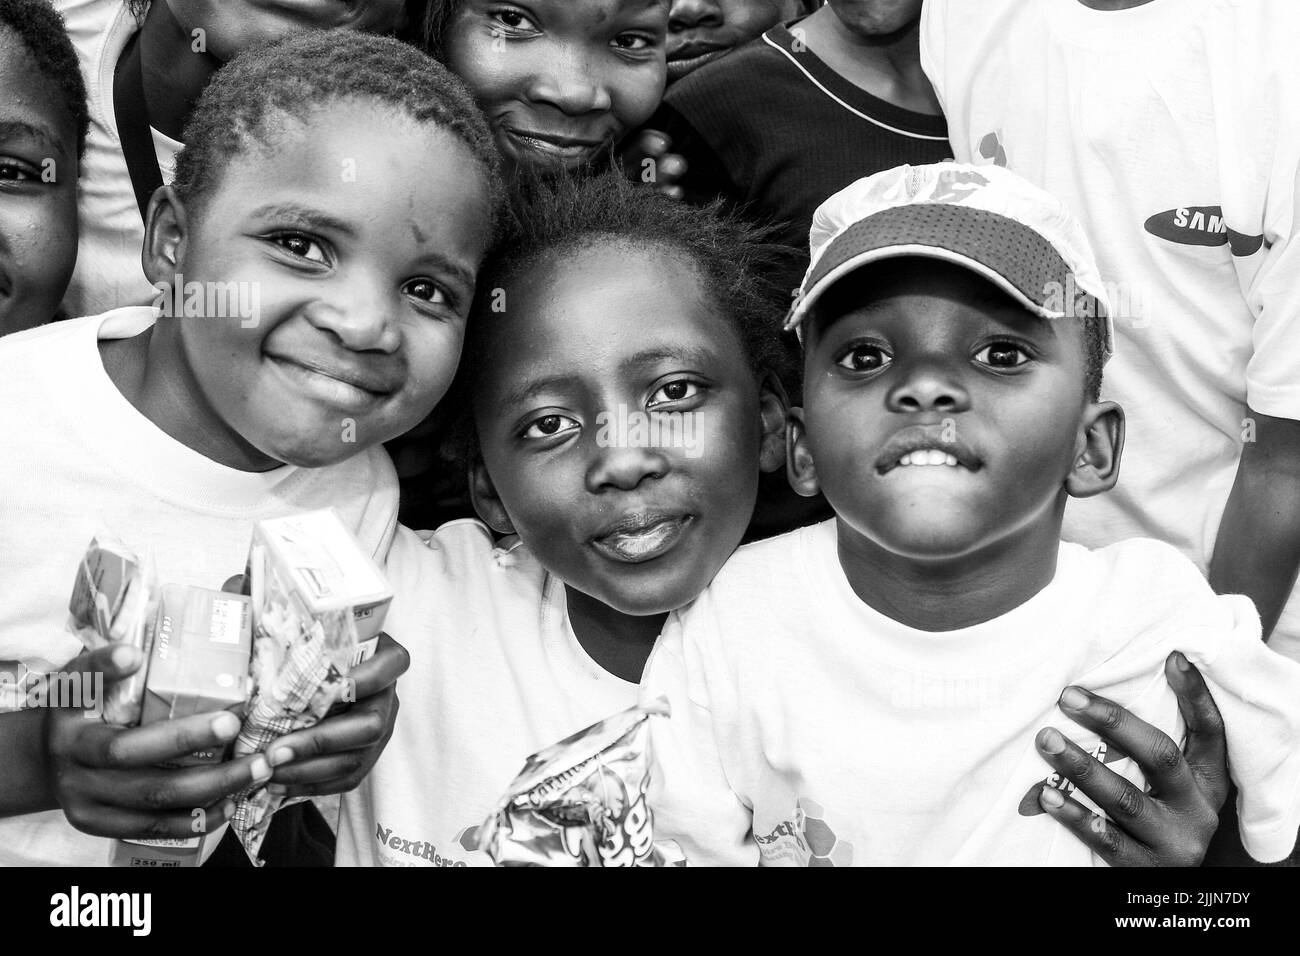 Un portrait en niveaux de gris des enfants africains qui se posent sur le terrain de jeu de l'école à Johannesburg, en Afrique du Sud Banque D'Images